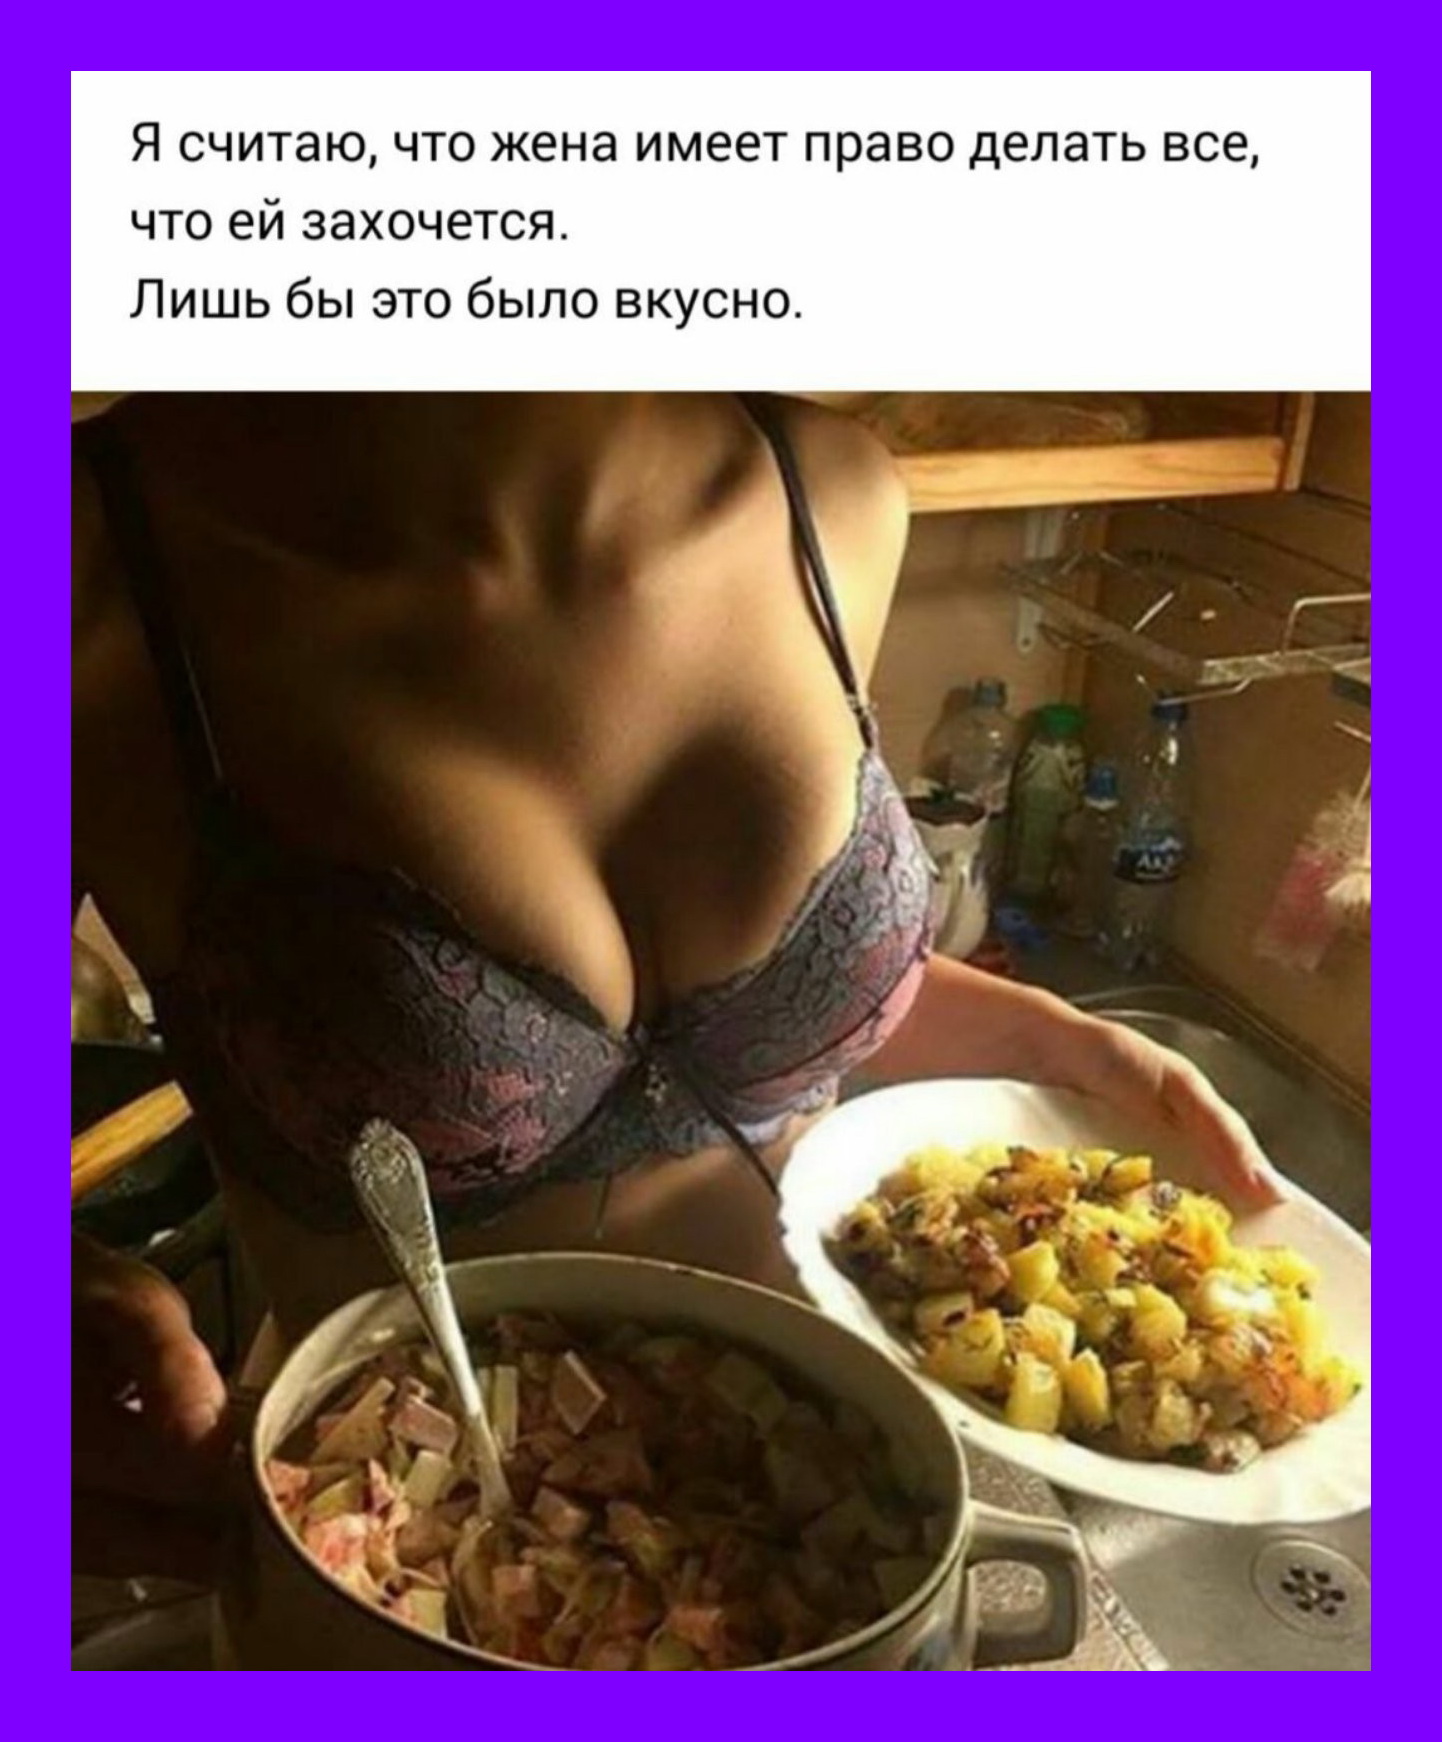 Женская грудь и еда